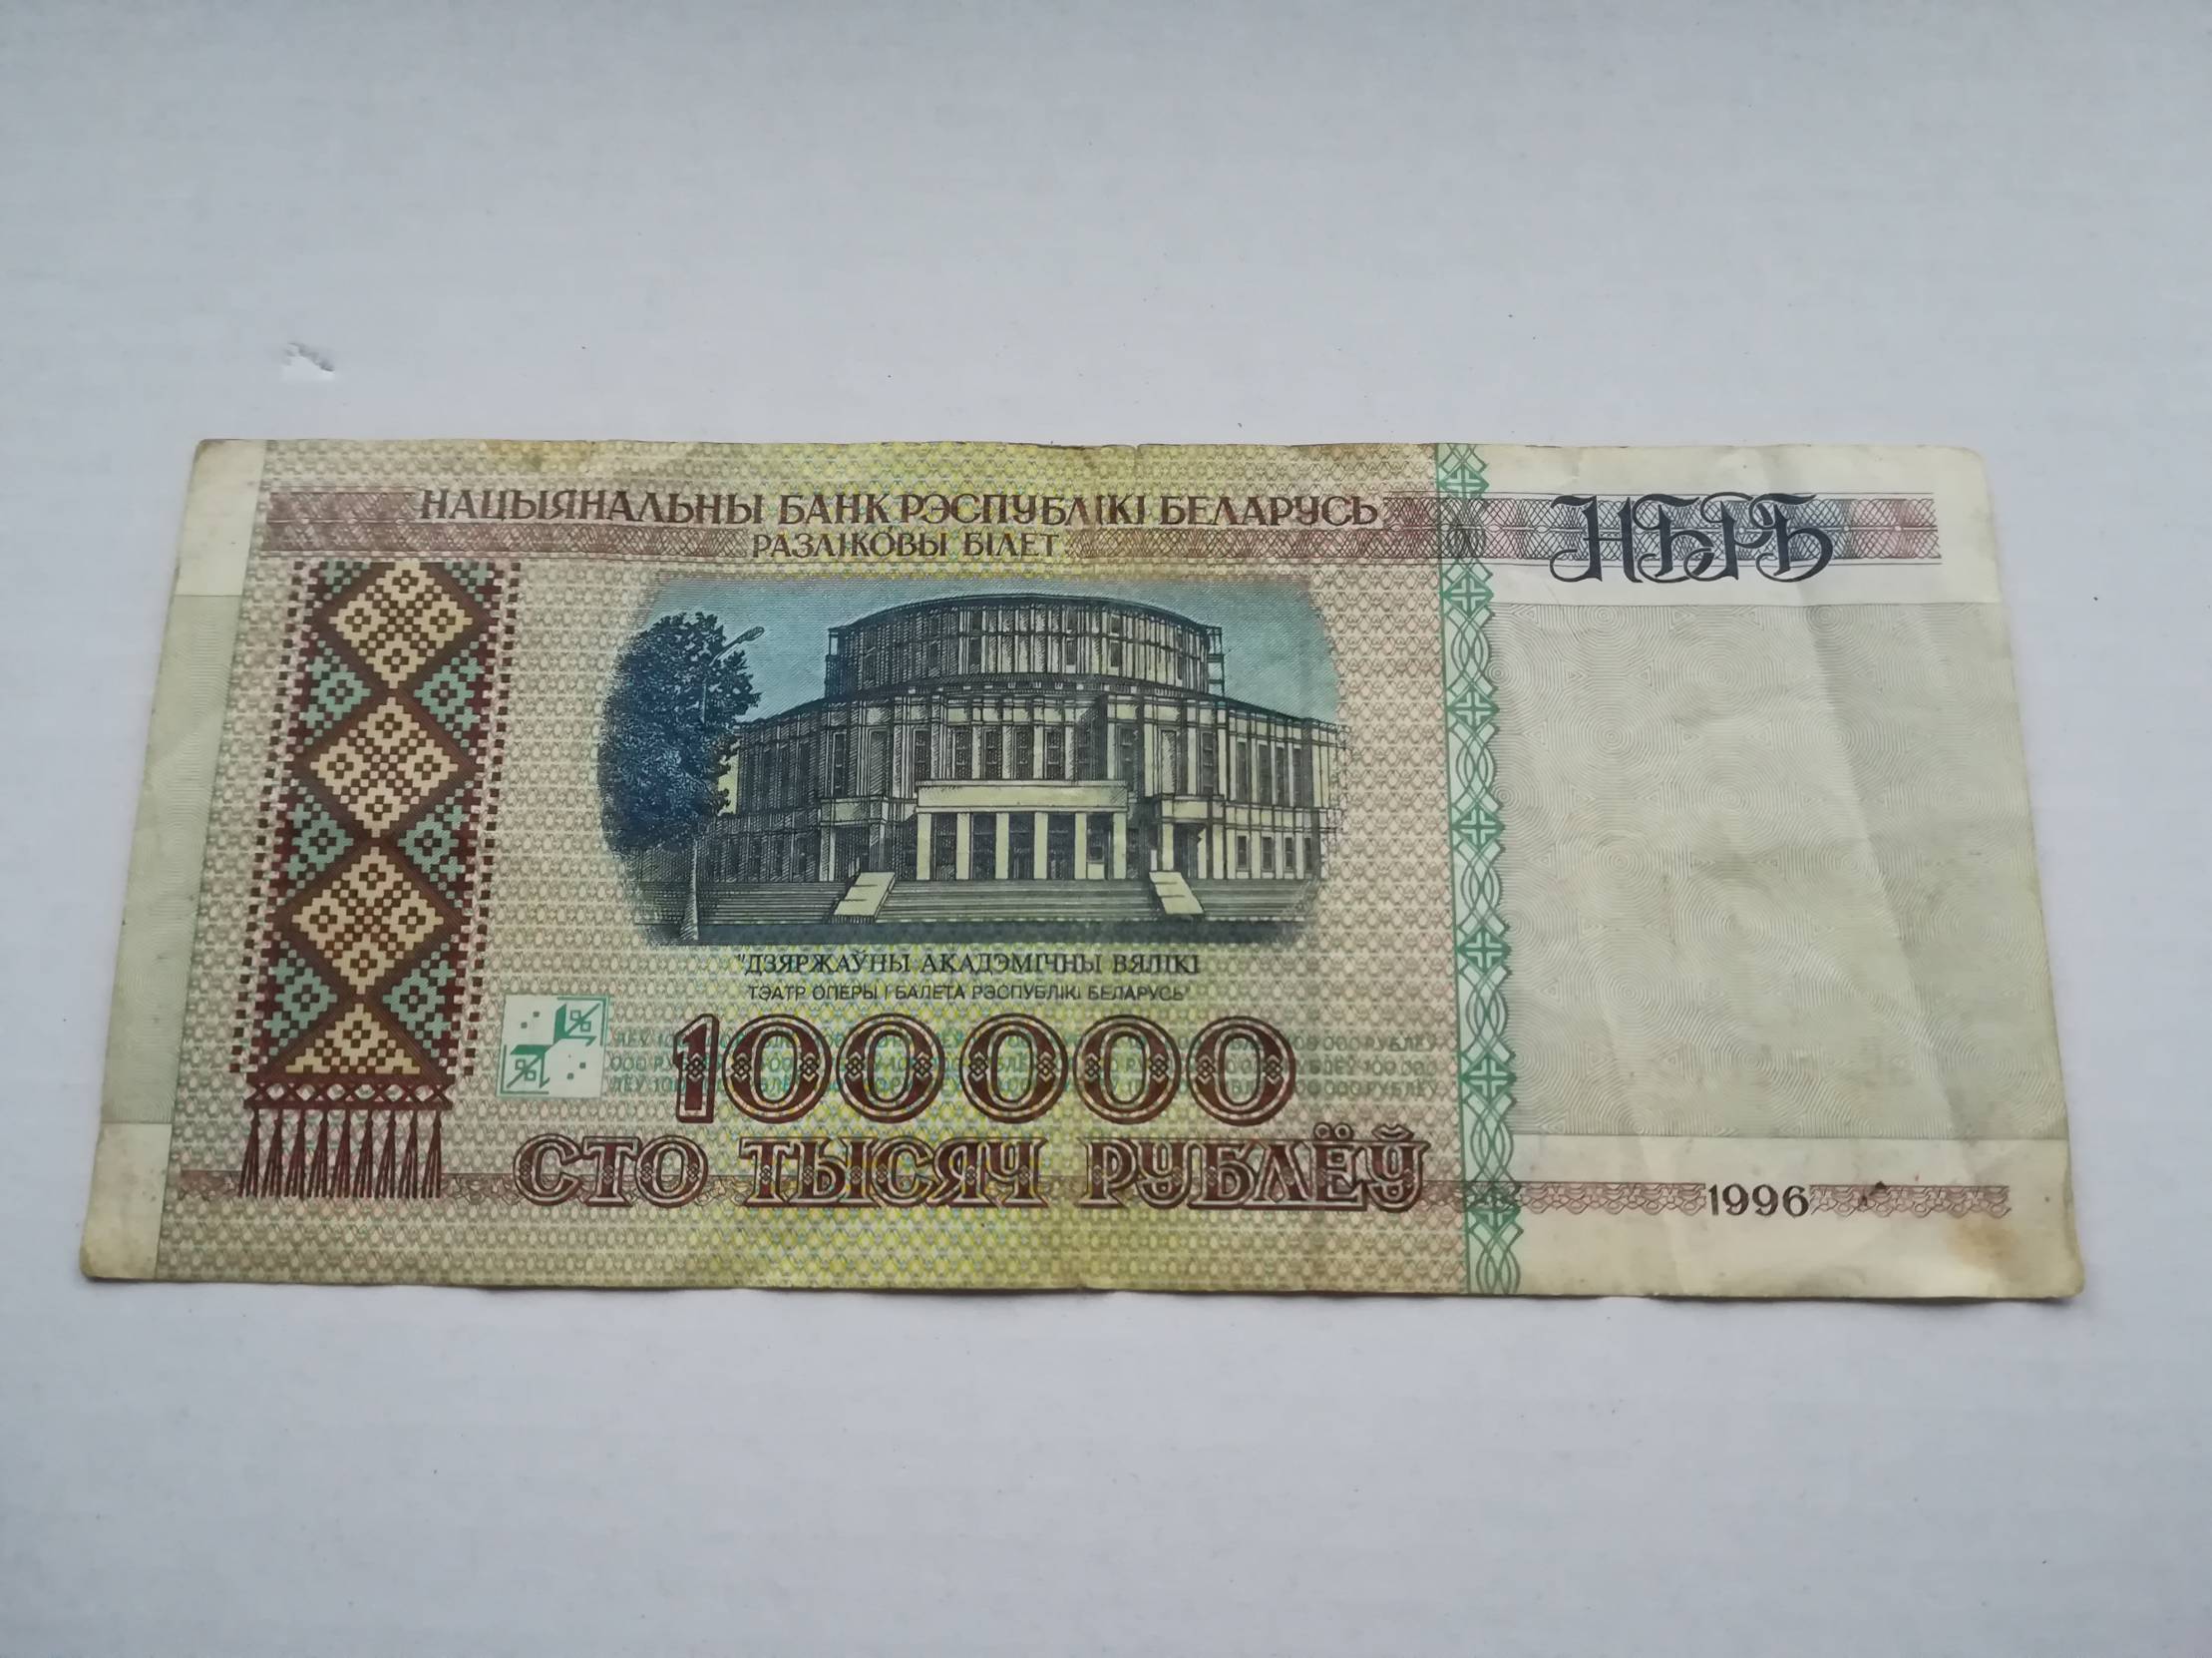 100000 рублей 20. 100.000 Белорусских руб 1996 год. 100000 Белорусских рублей 1996 года. Купюра 100 рублей 1996. СТО тысяч рублей купюра 1996 года.